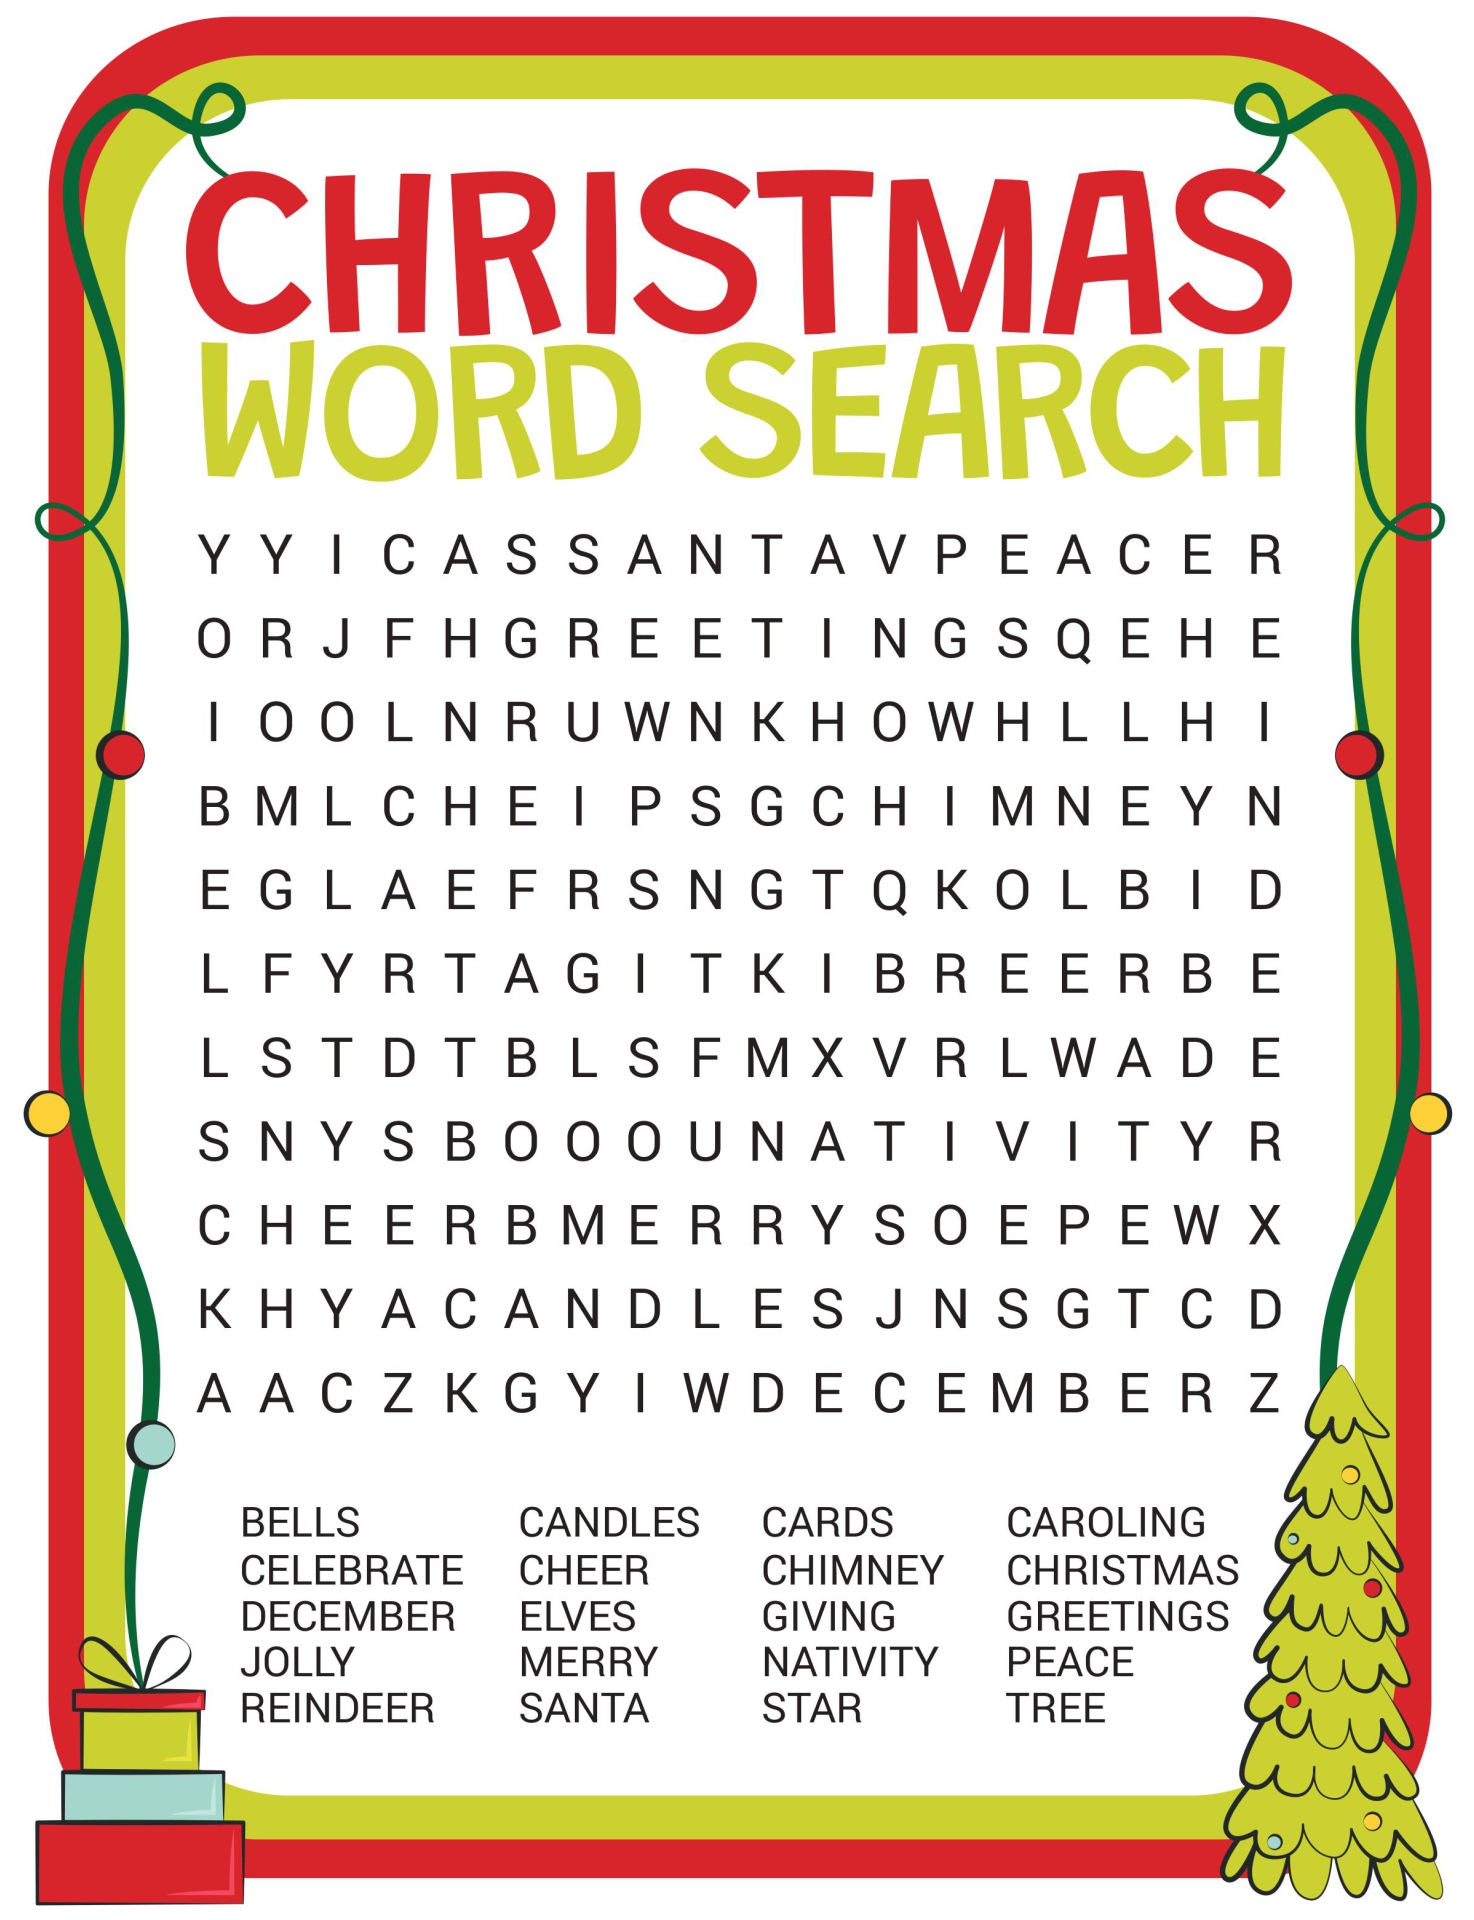 5 Fun Christmas Word Search Printable For Kids Free Fun Christmas 